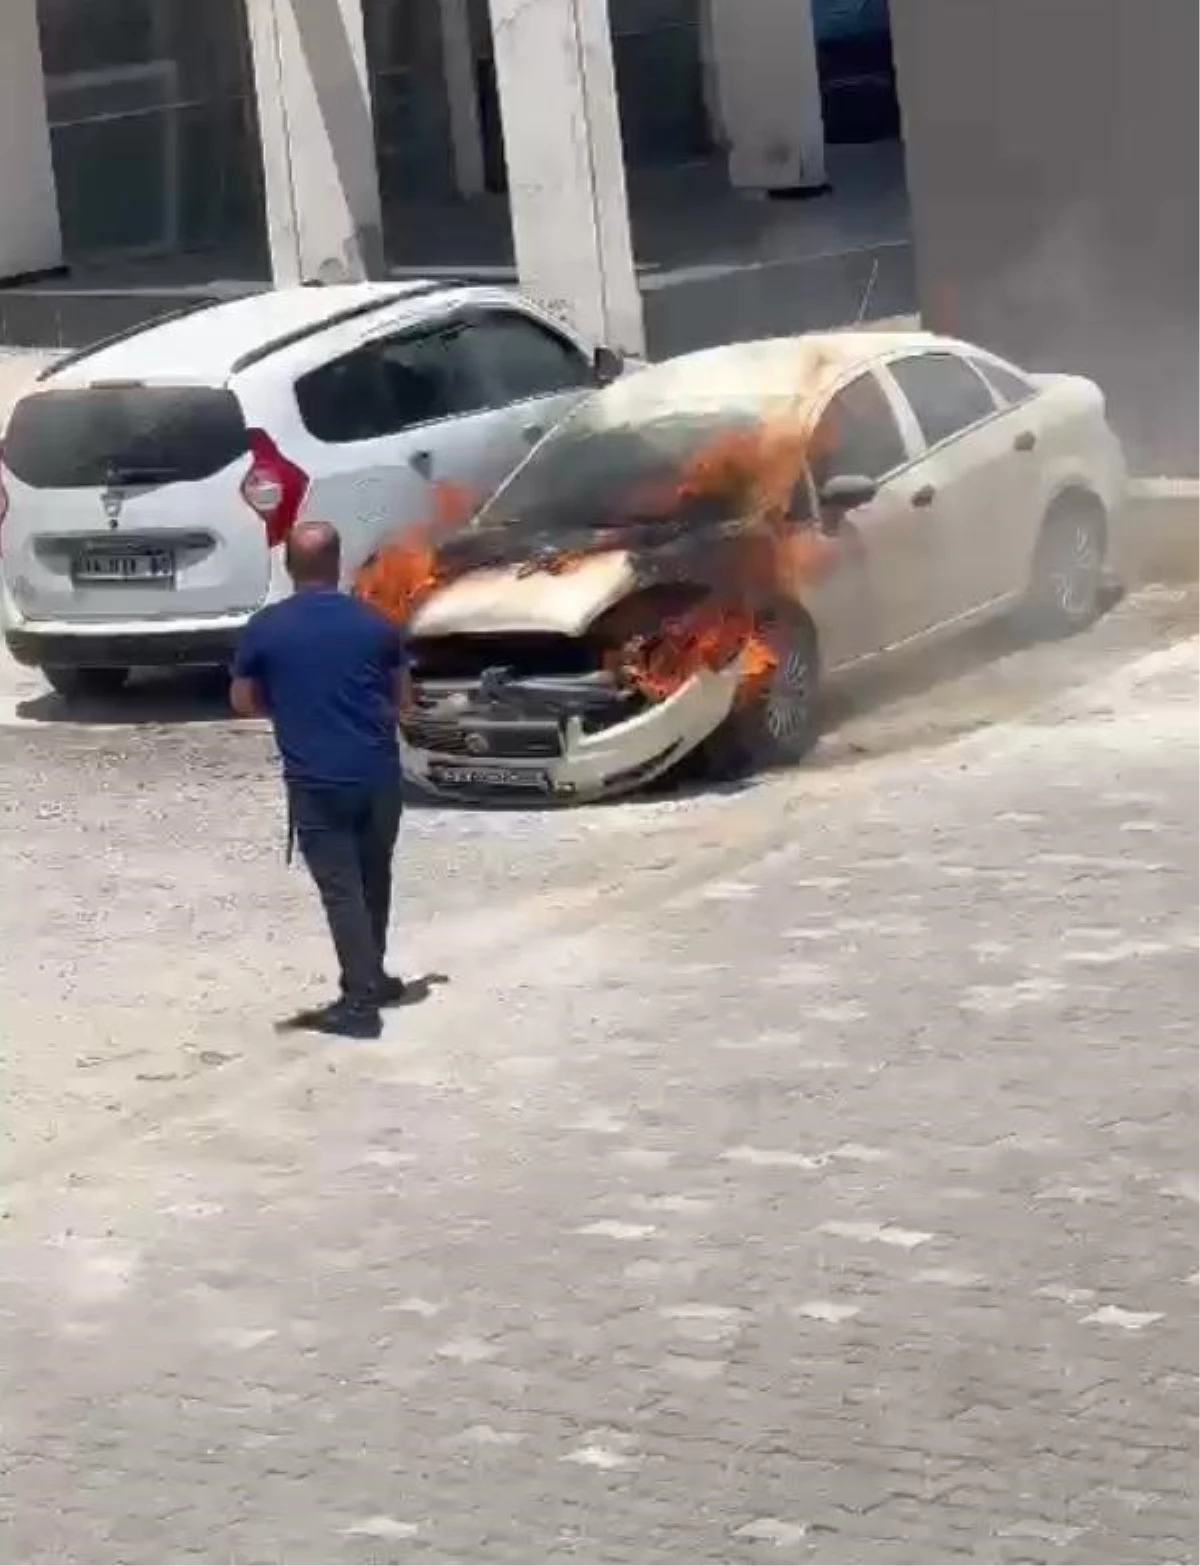 Mersin'de Park Halindeki Arabada Yangın Çıktı